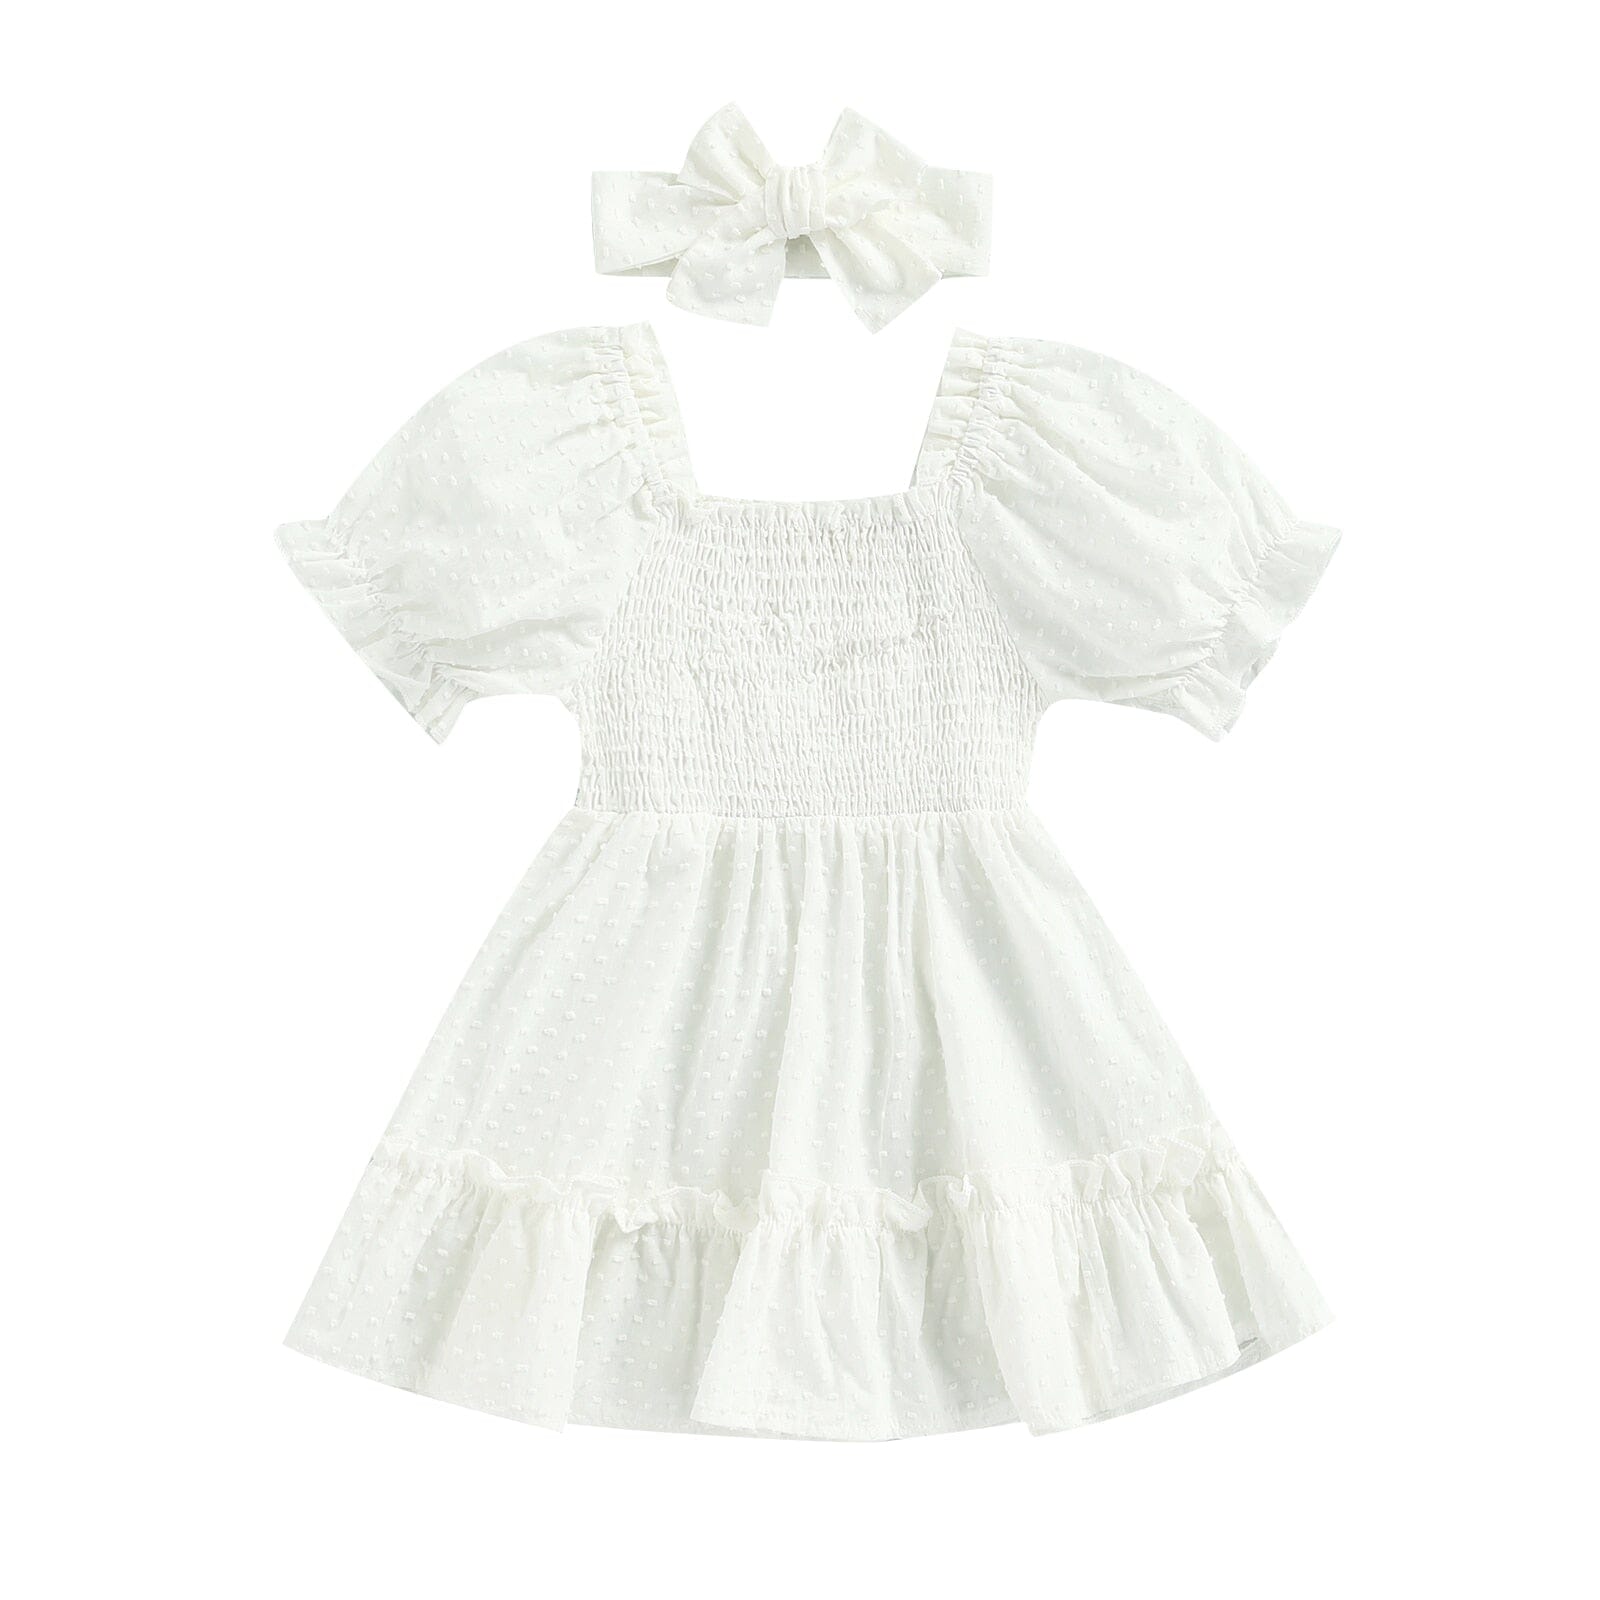 Vestido Infantil Delicado + Faixa Loja Click Certo Branco 2-3 Anos 